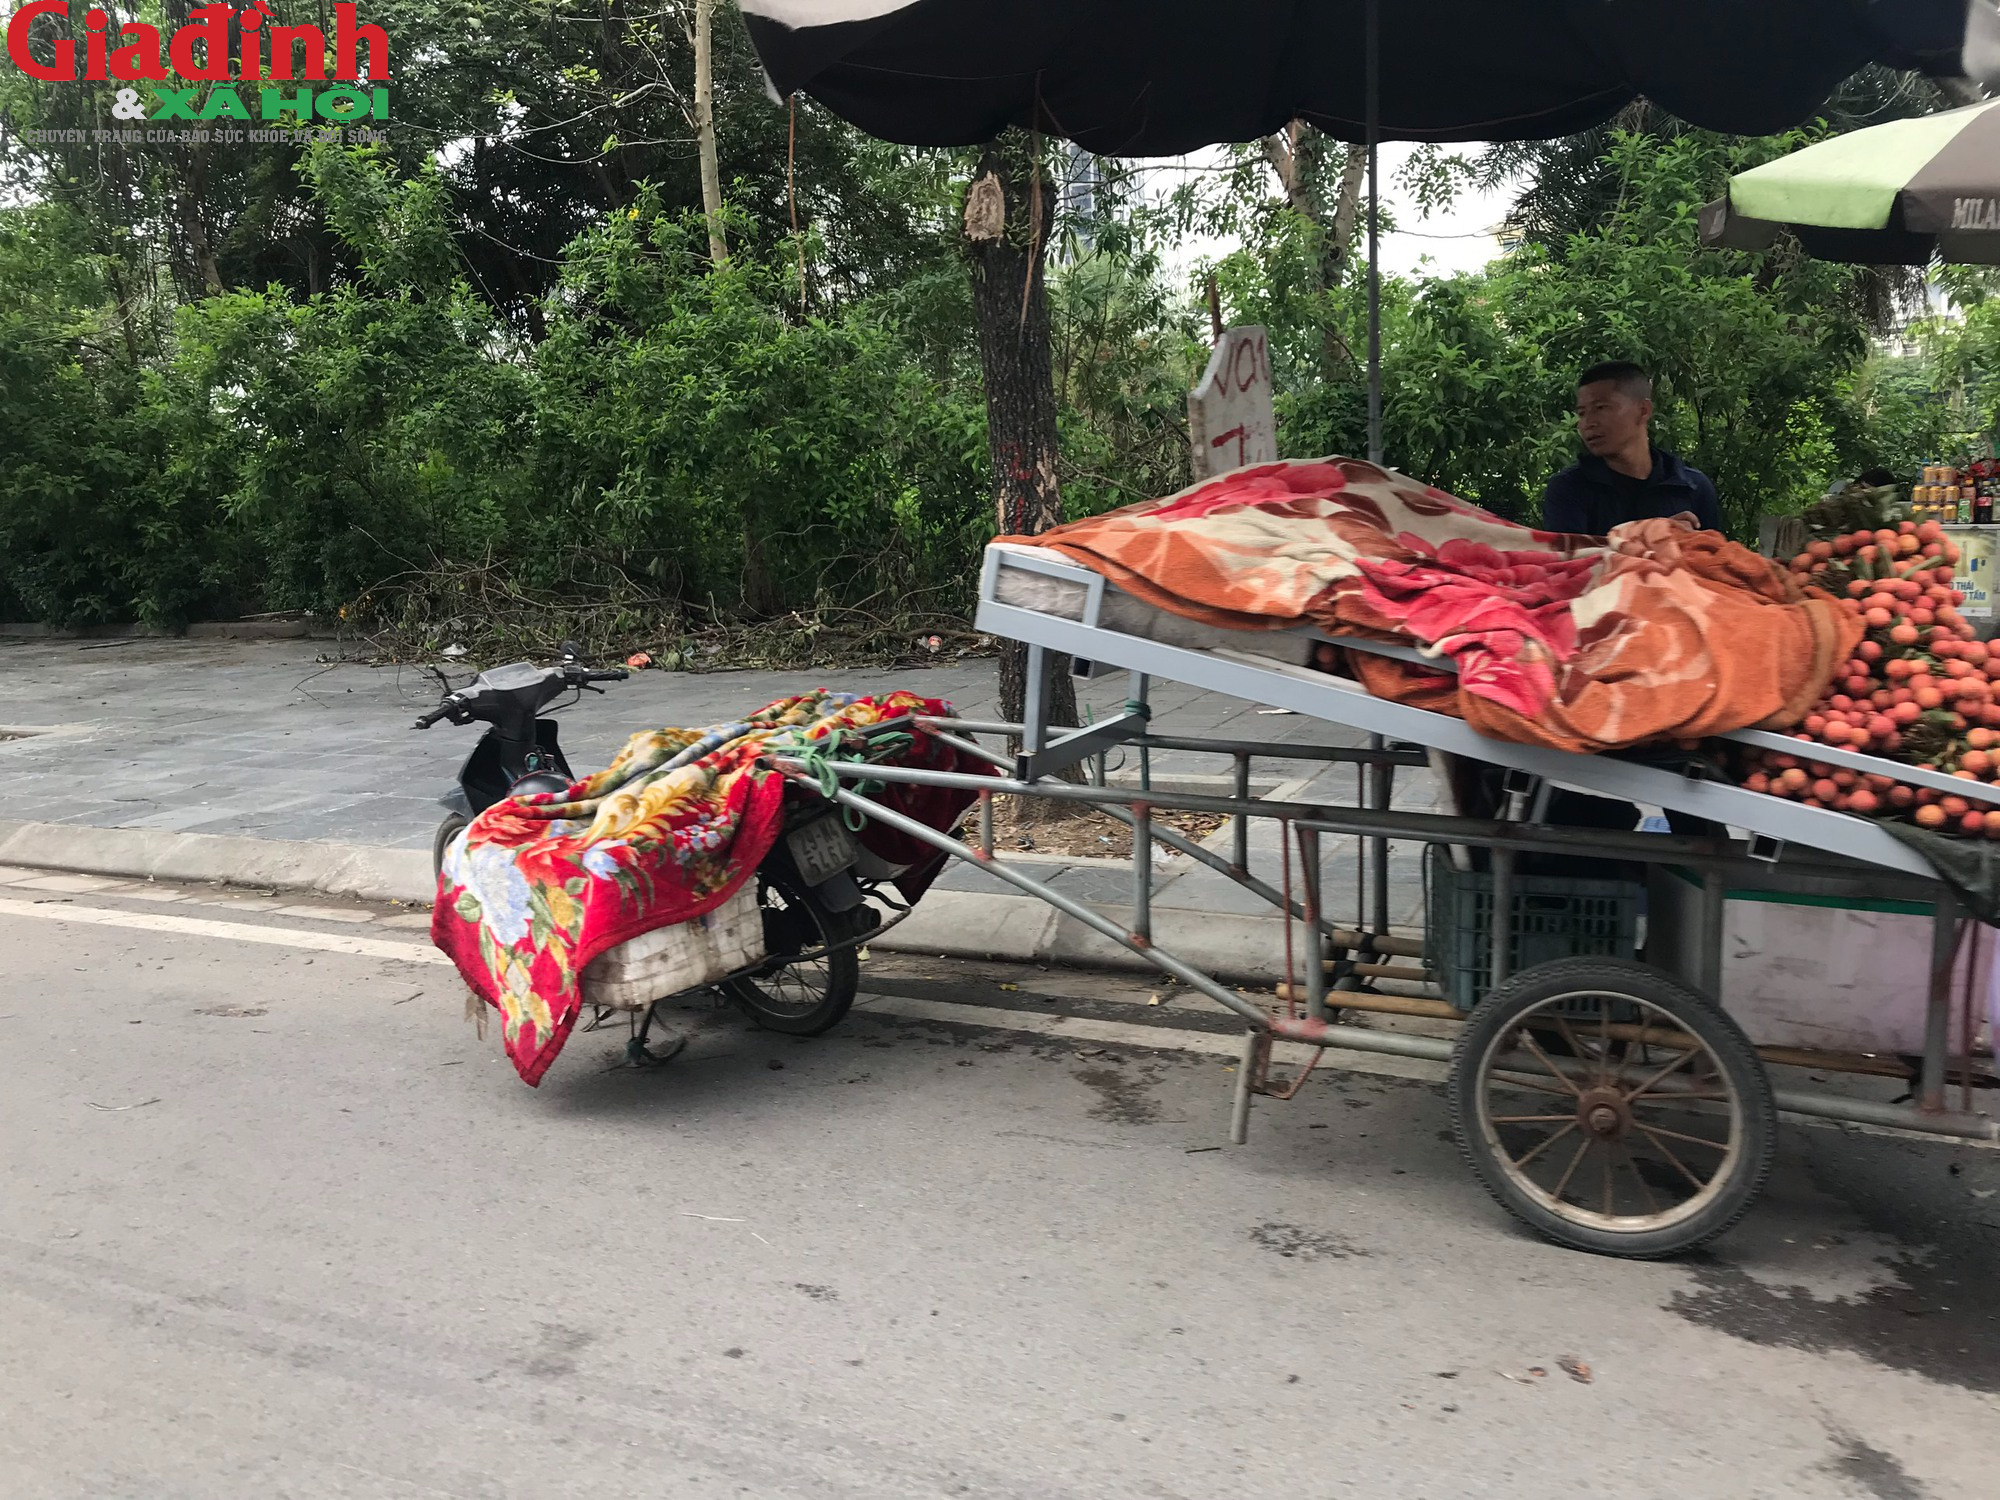 Ám ảnh với xe tự chế lưu thông trên đường phố Hà Nội - Ảnh 9.